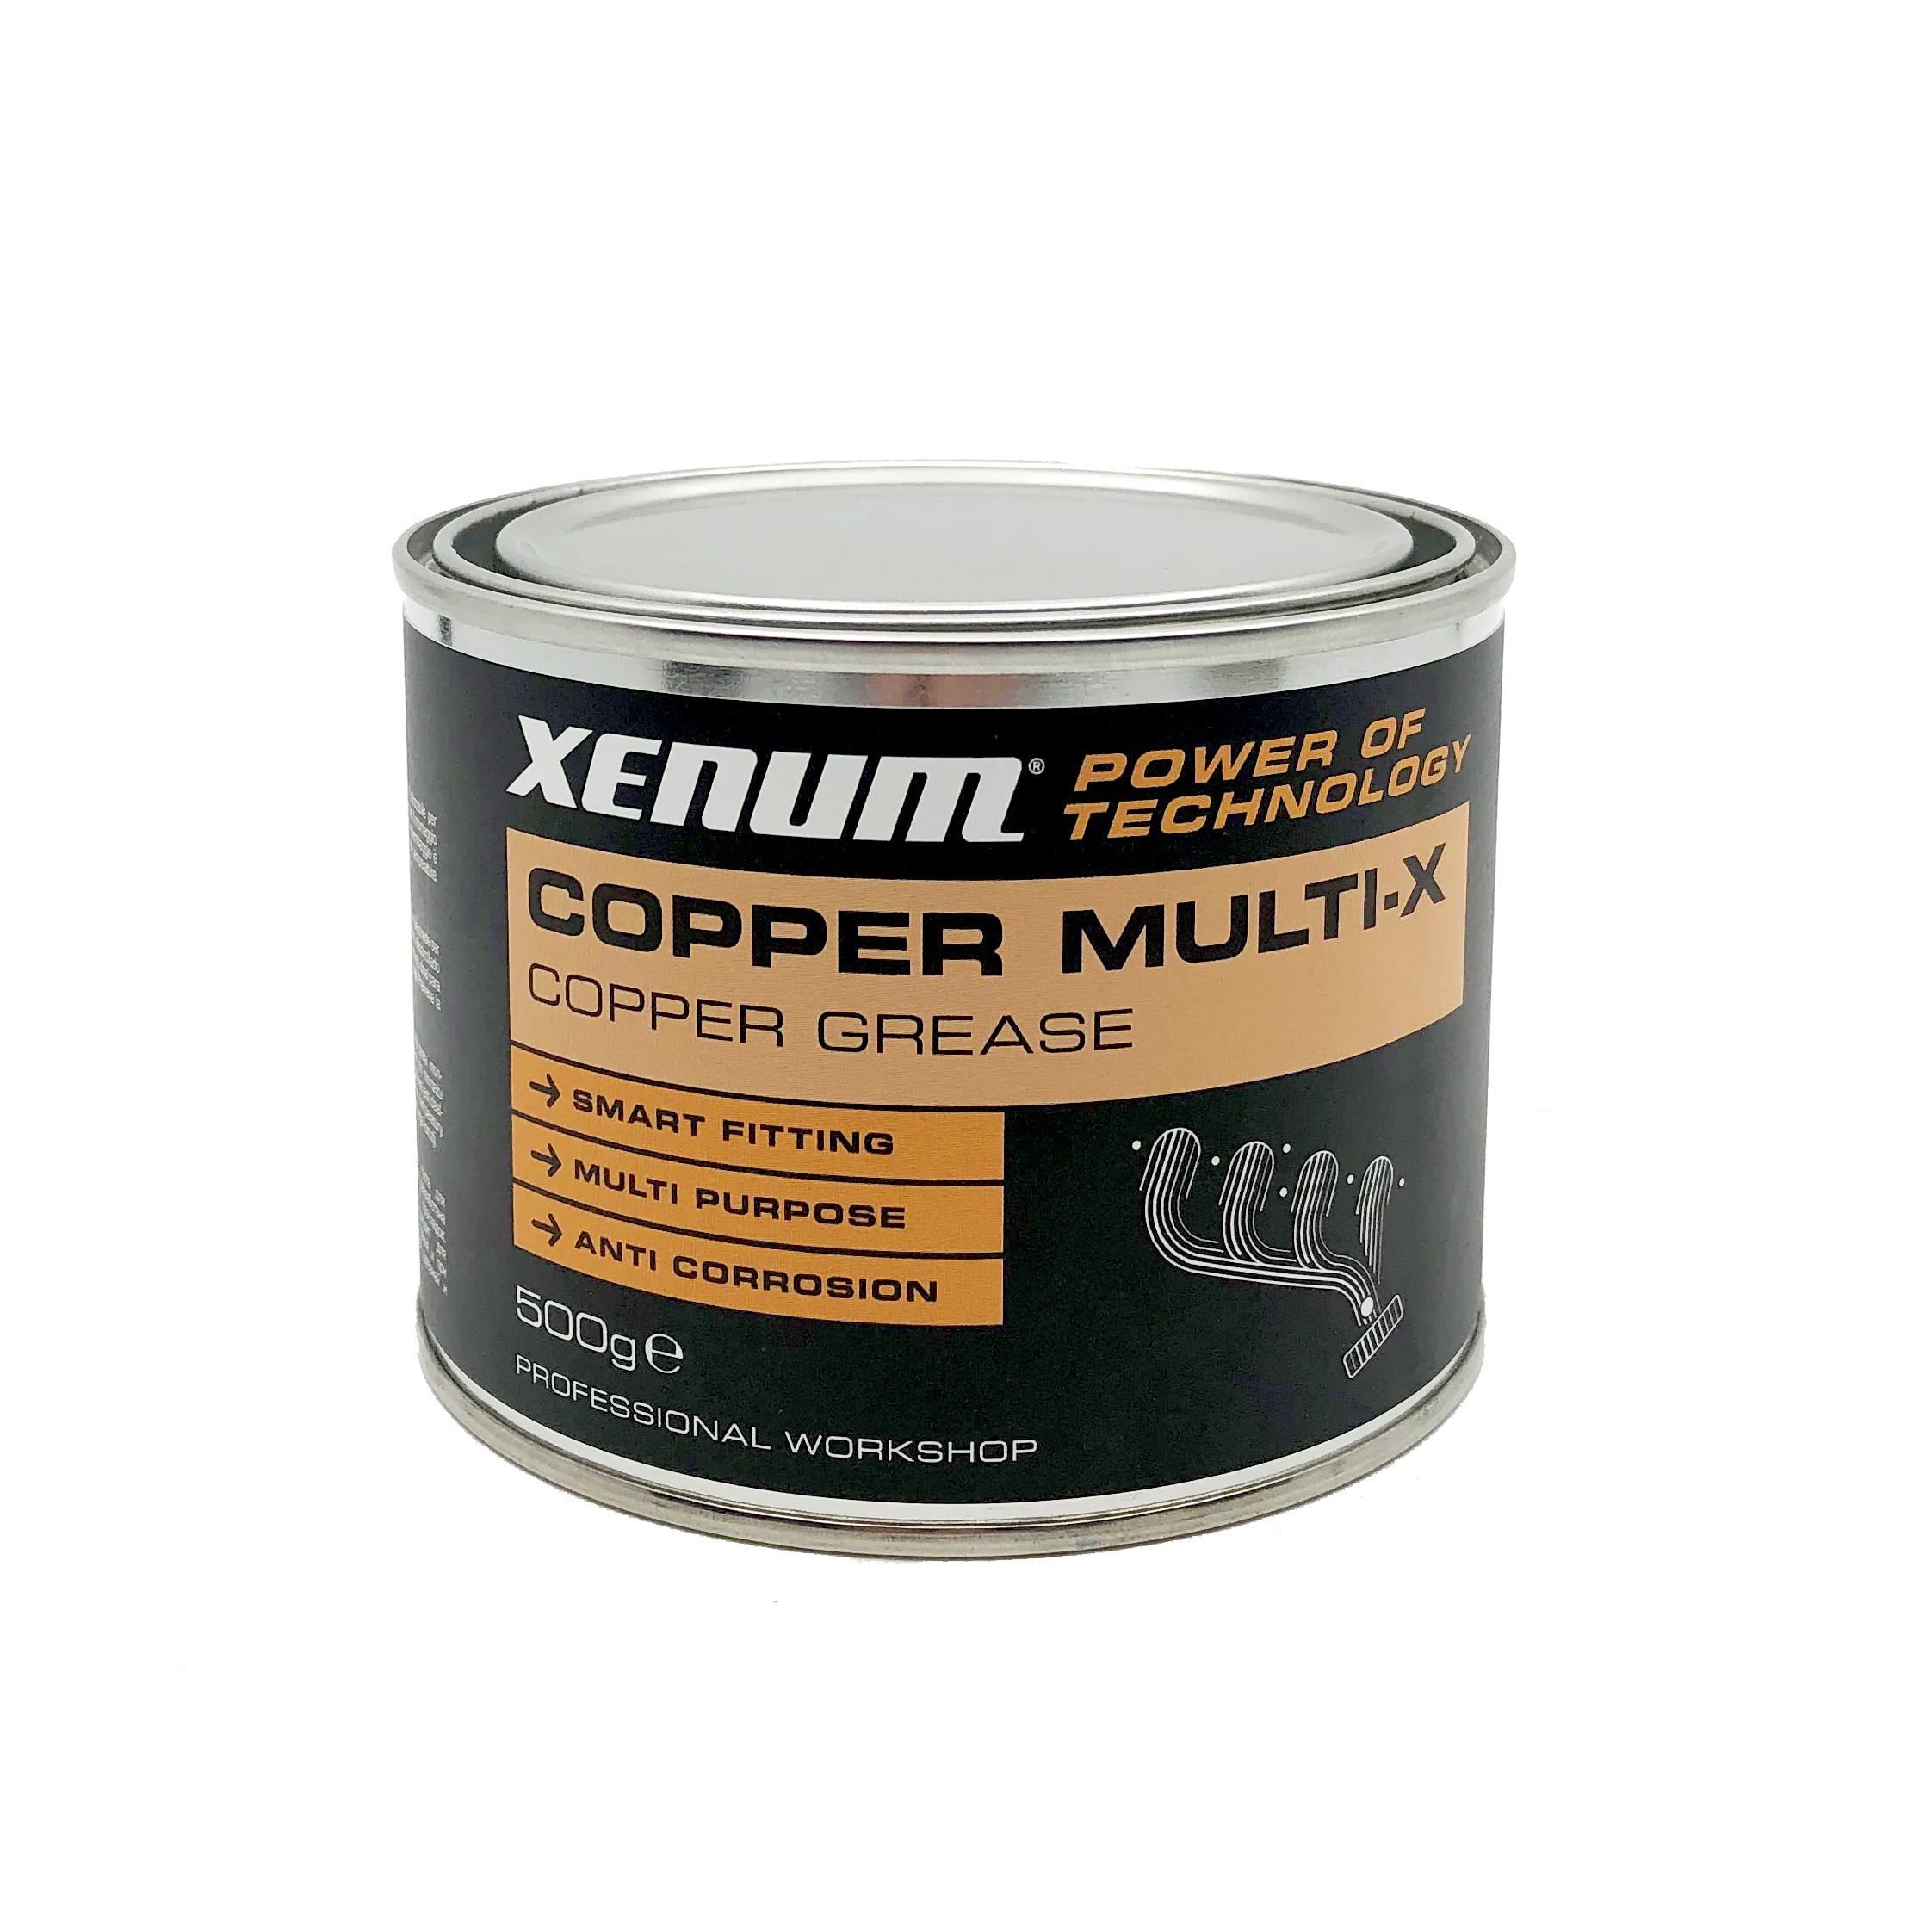 Xenum Copper Multi-X